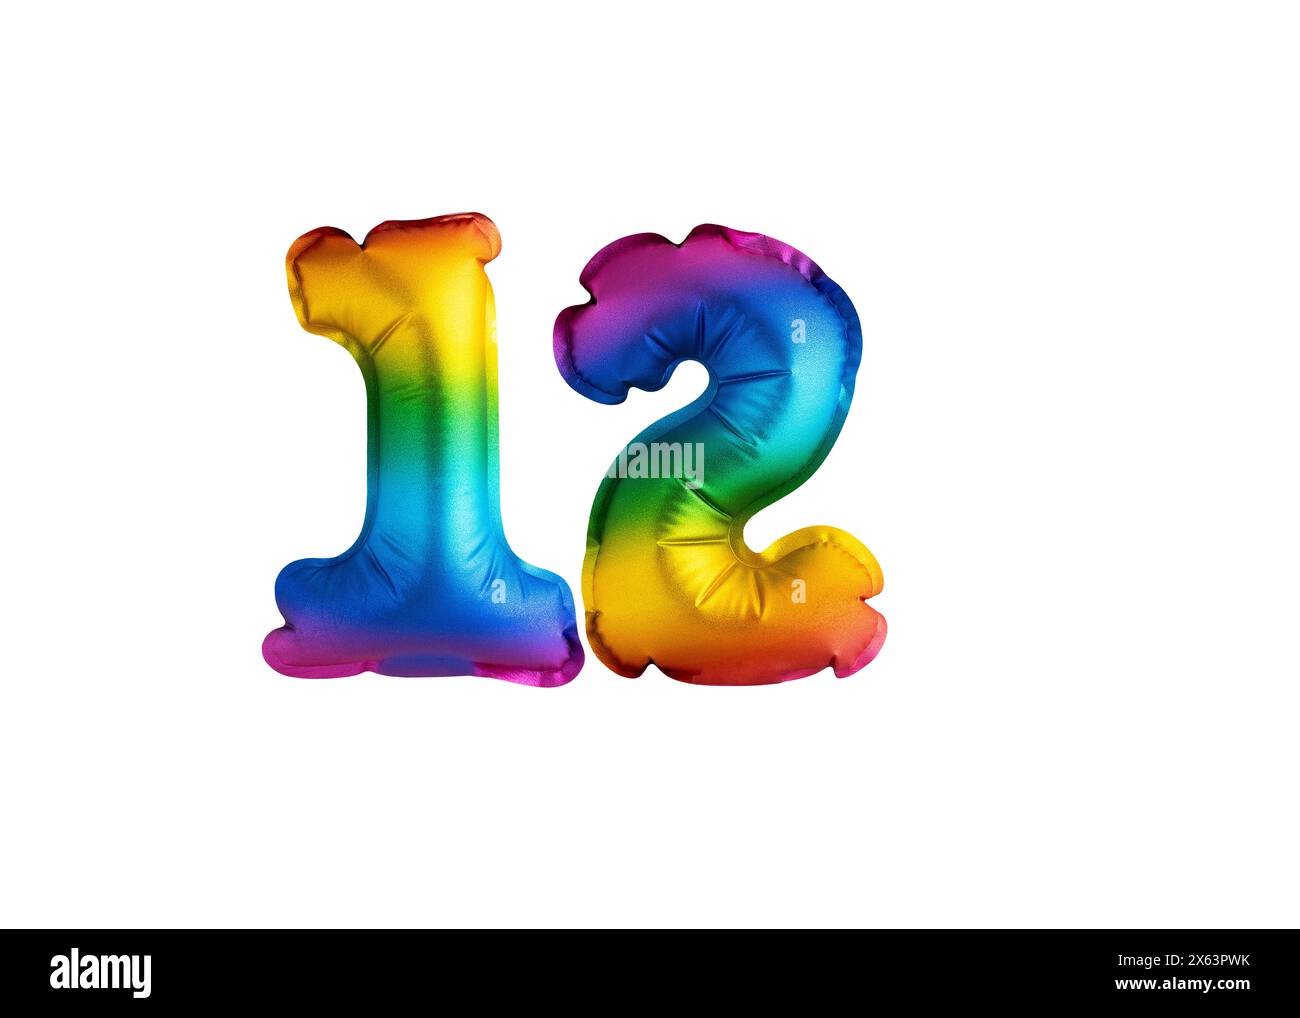 12 ans - ballon multicolore numéro 12 anniversaire. Joyeux anniversaire félicitations Banque D'Images